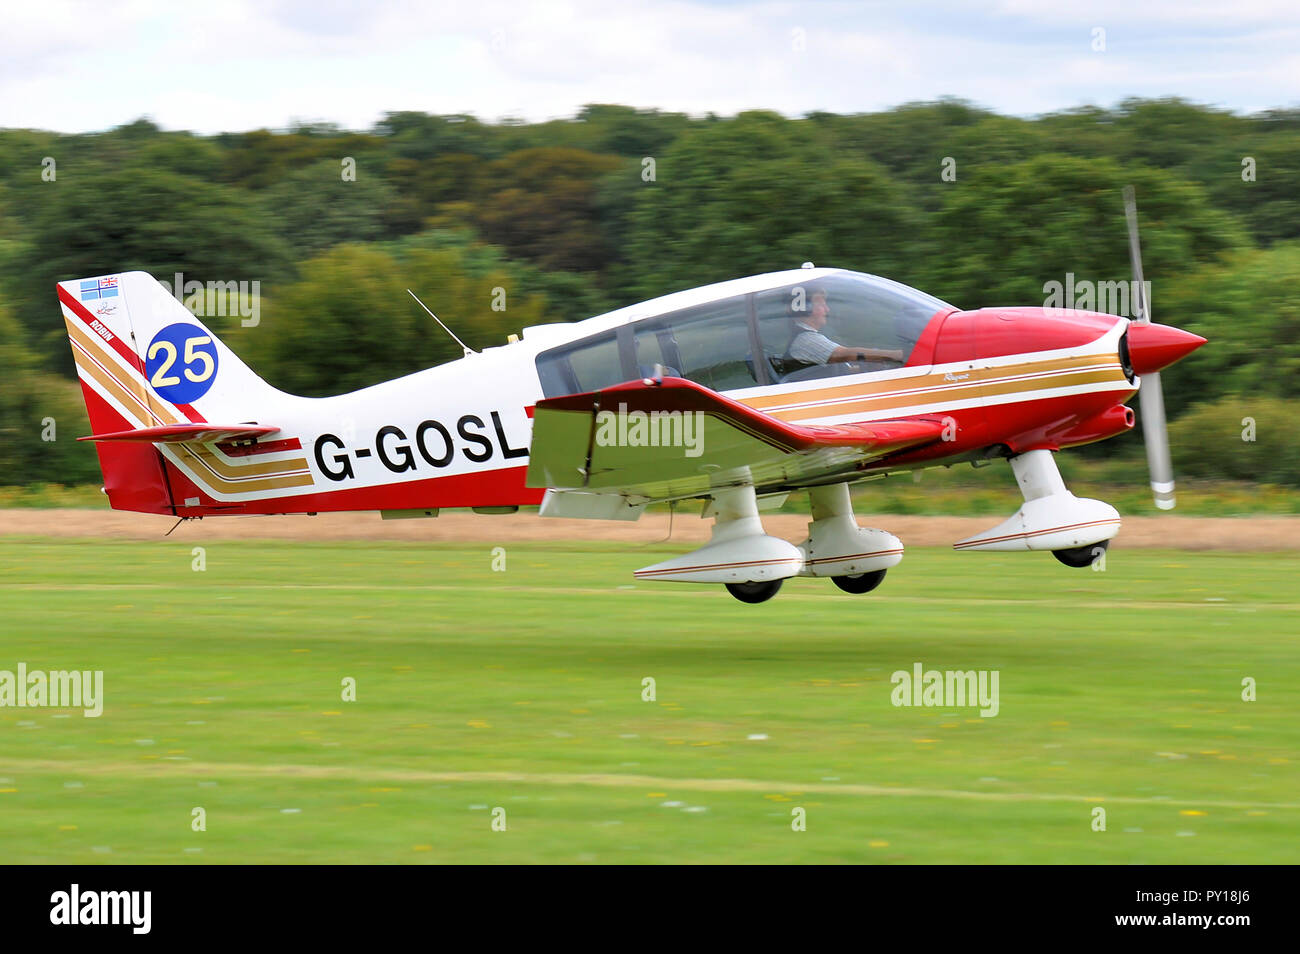 Robin DR400 Regent avion léger G-GDSL de Richard Gosling dans un atterrissage à l'Aérodrome de Elmsett concours Suffolk, UK. Piste gazonnée. L'aviation générale Banque D'Images